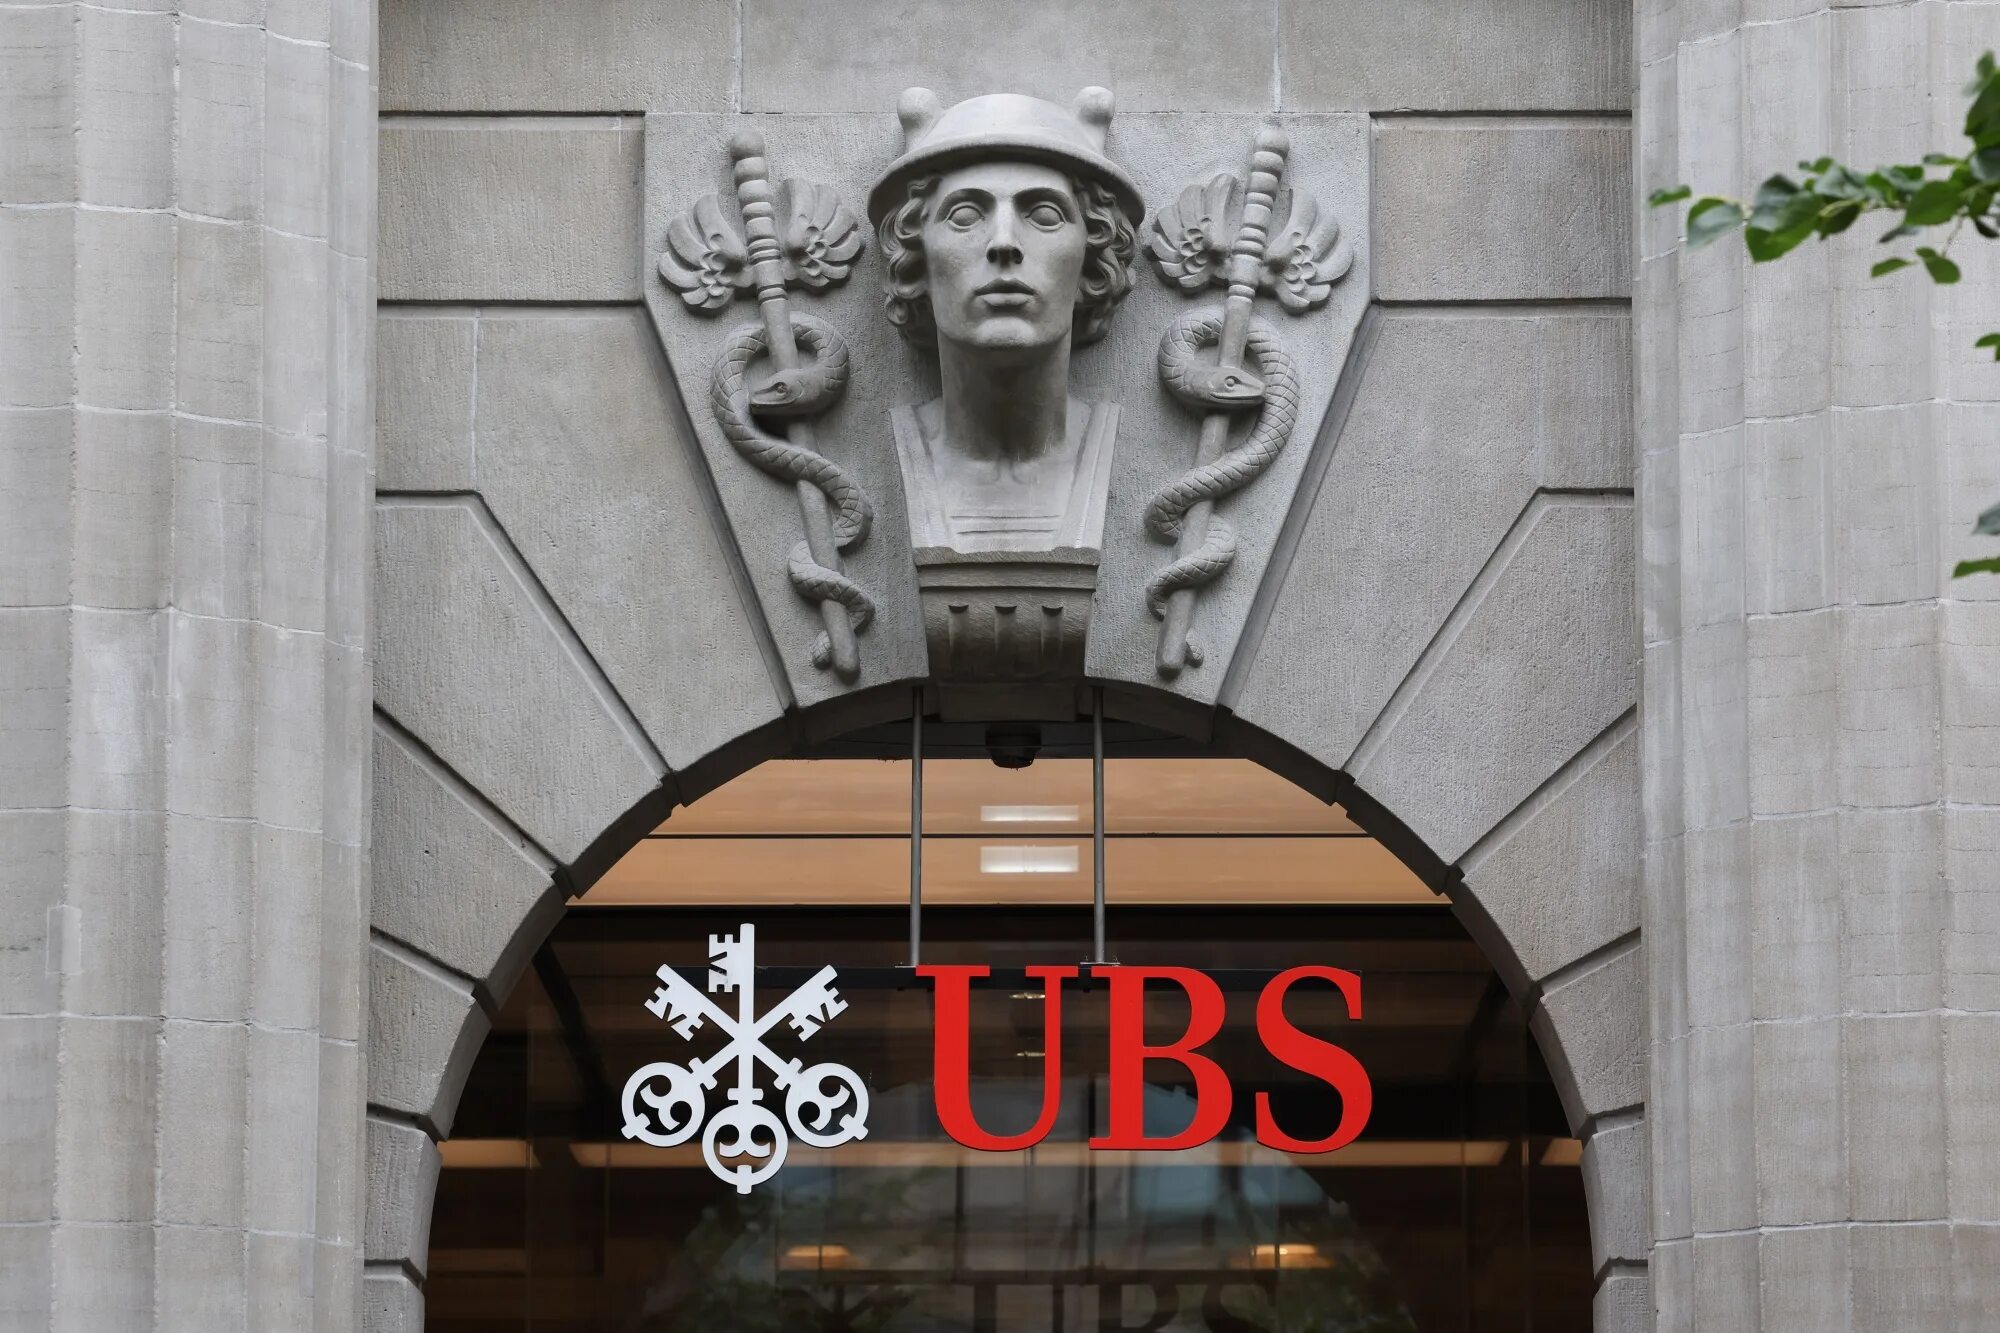 Банку ubs. Банк ЮБС Швейцария. Банки Швейцарии UBS. Логотипы швейцарских банков. Швейцарский банк логотип.